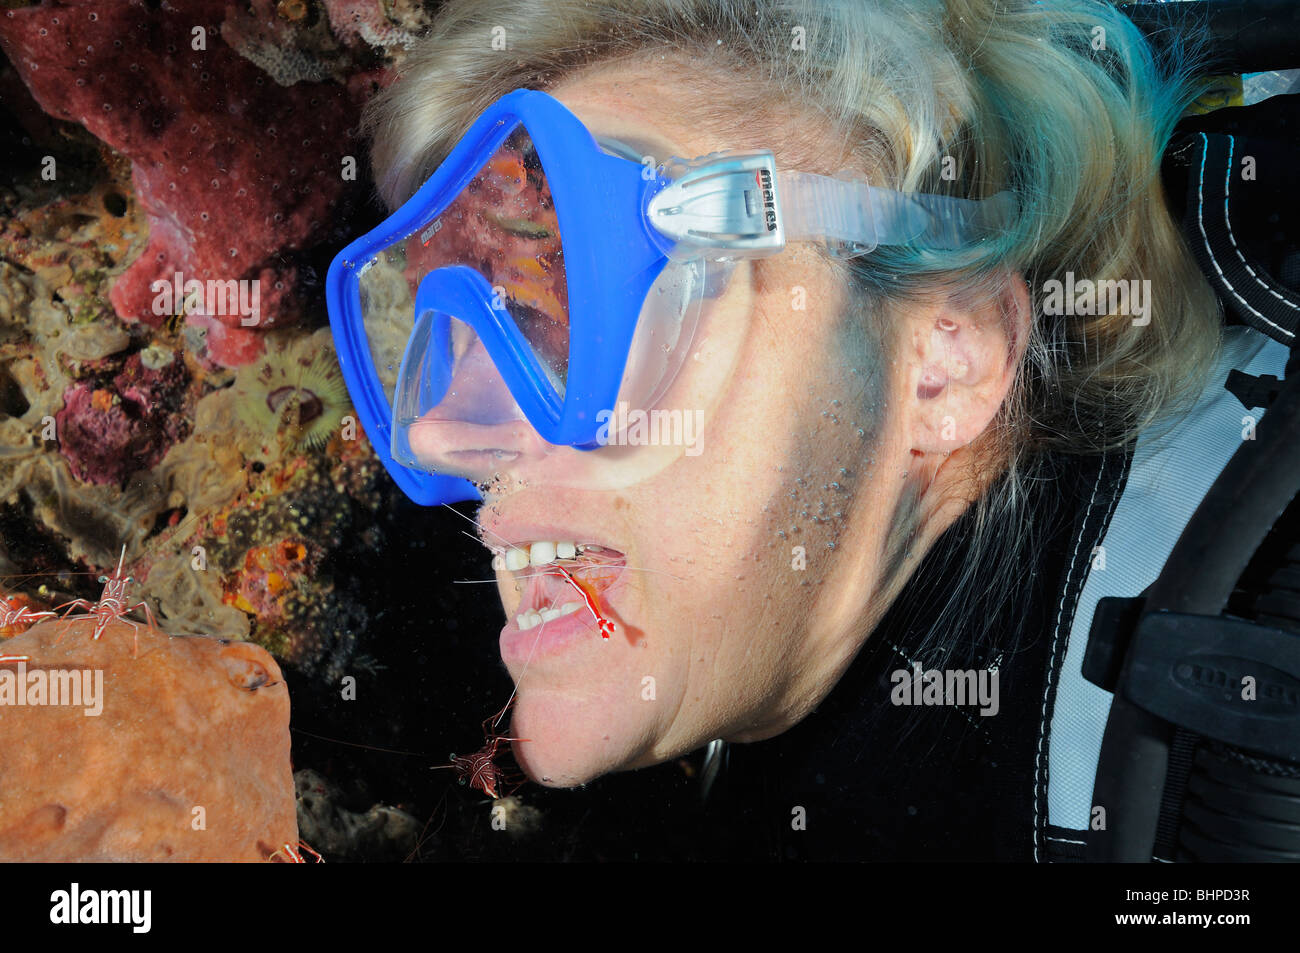 Lysmata amboinensis, plongée sous marine avec des crevettes dans la bouche, Bali, Indonésie, l'océan Indo-pacifique Banque D'Images